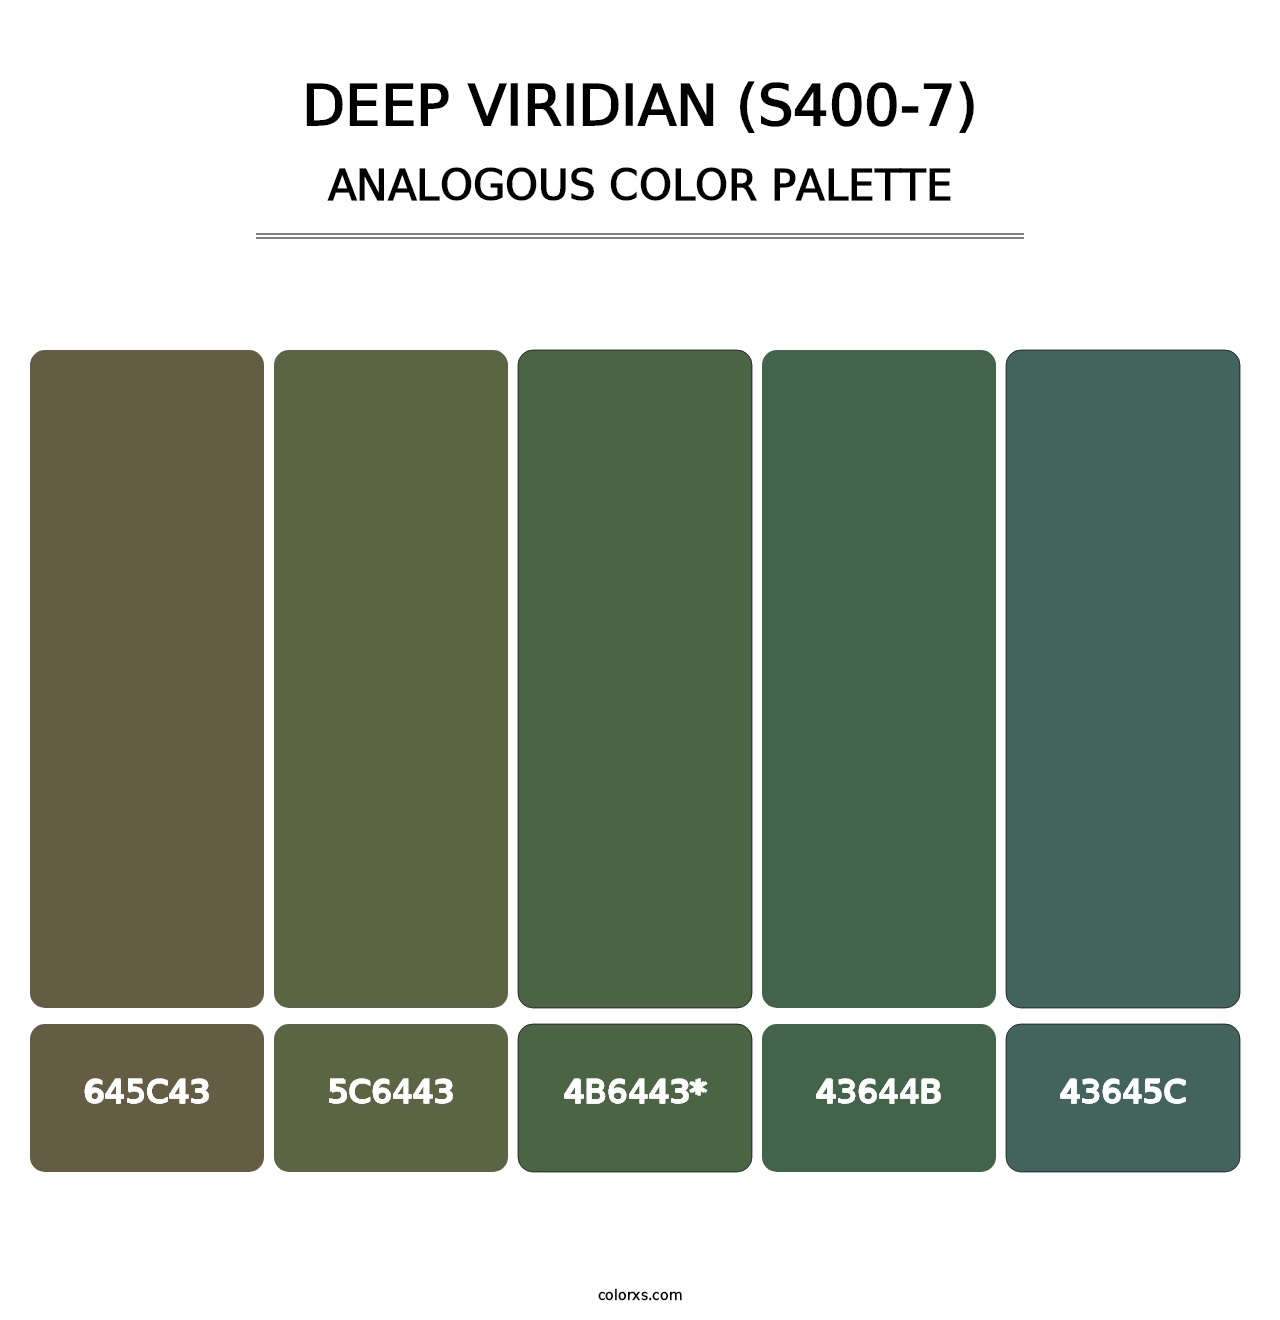 Deep Viridian (S400-7) - Analogous Color Palette